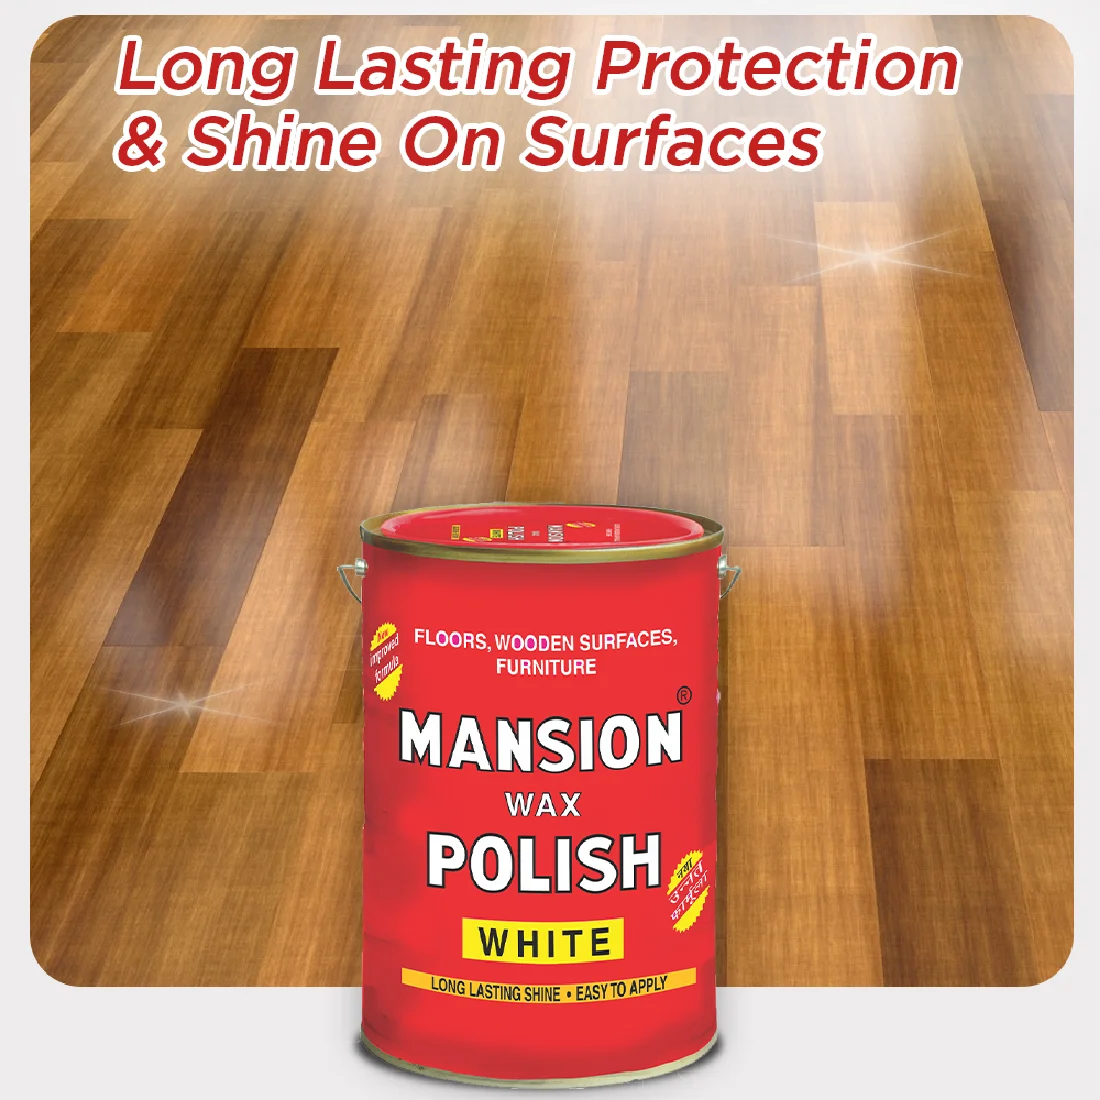 Mansion Wax Polish, 25KG